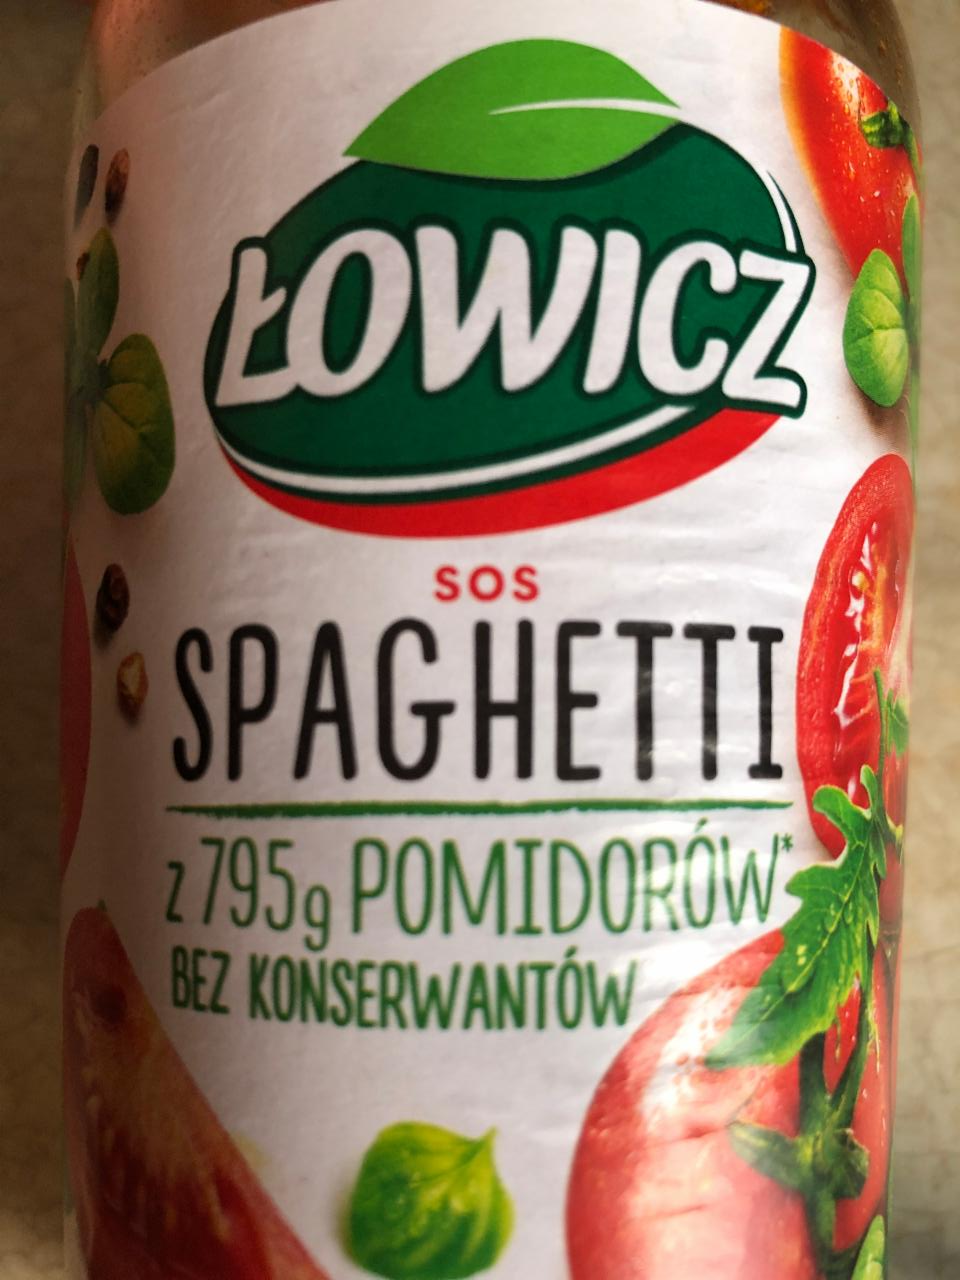 Zdjęcia - Sos spaghetti Łowicz